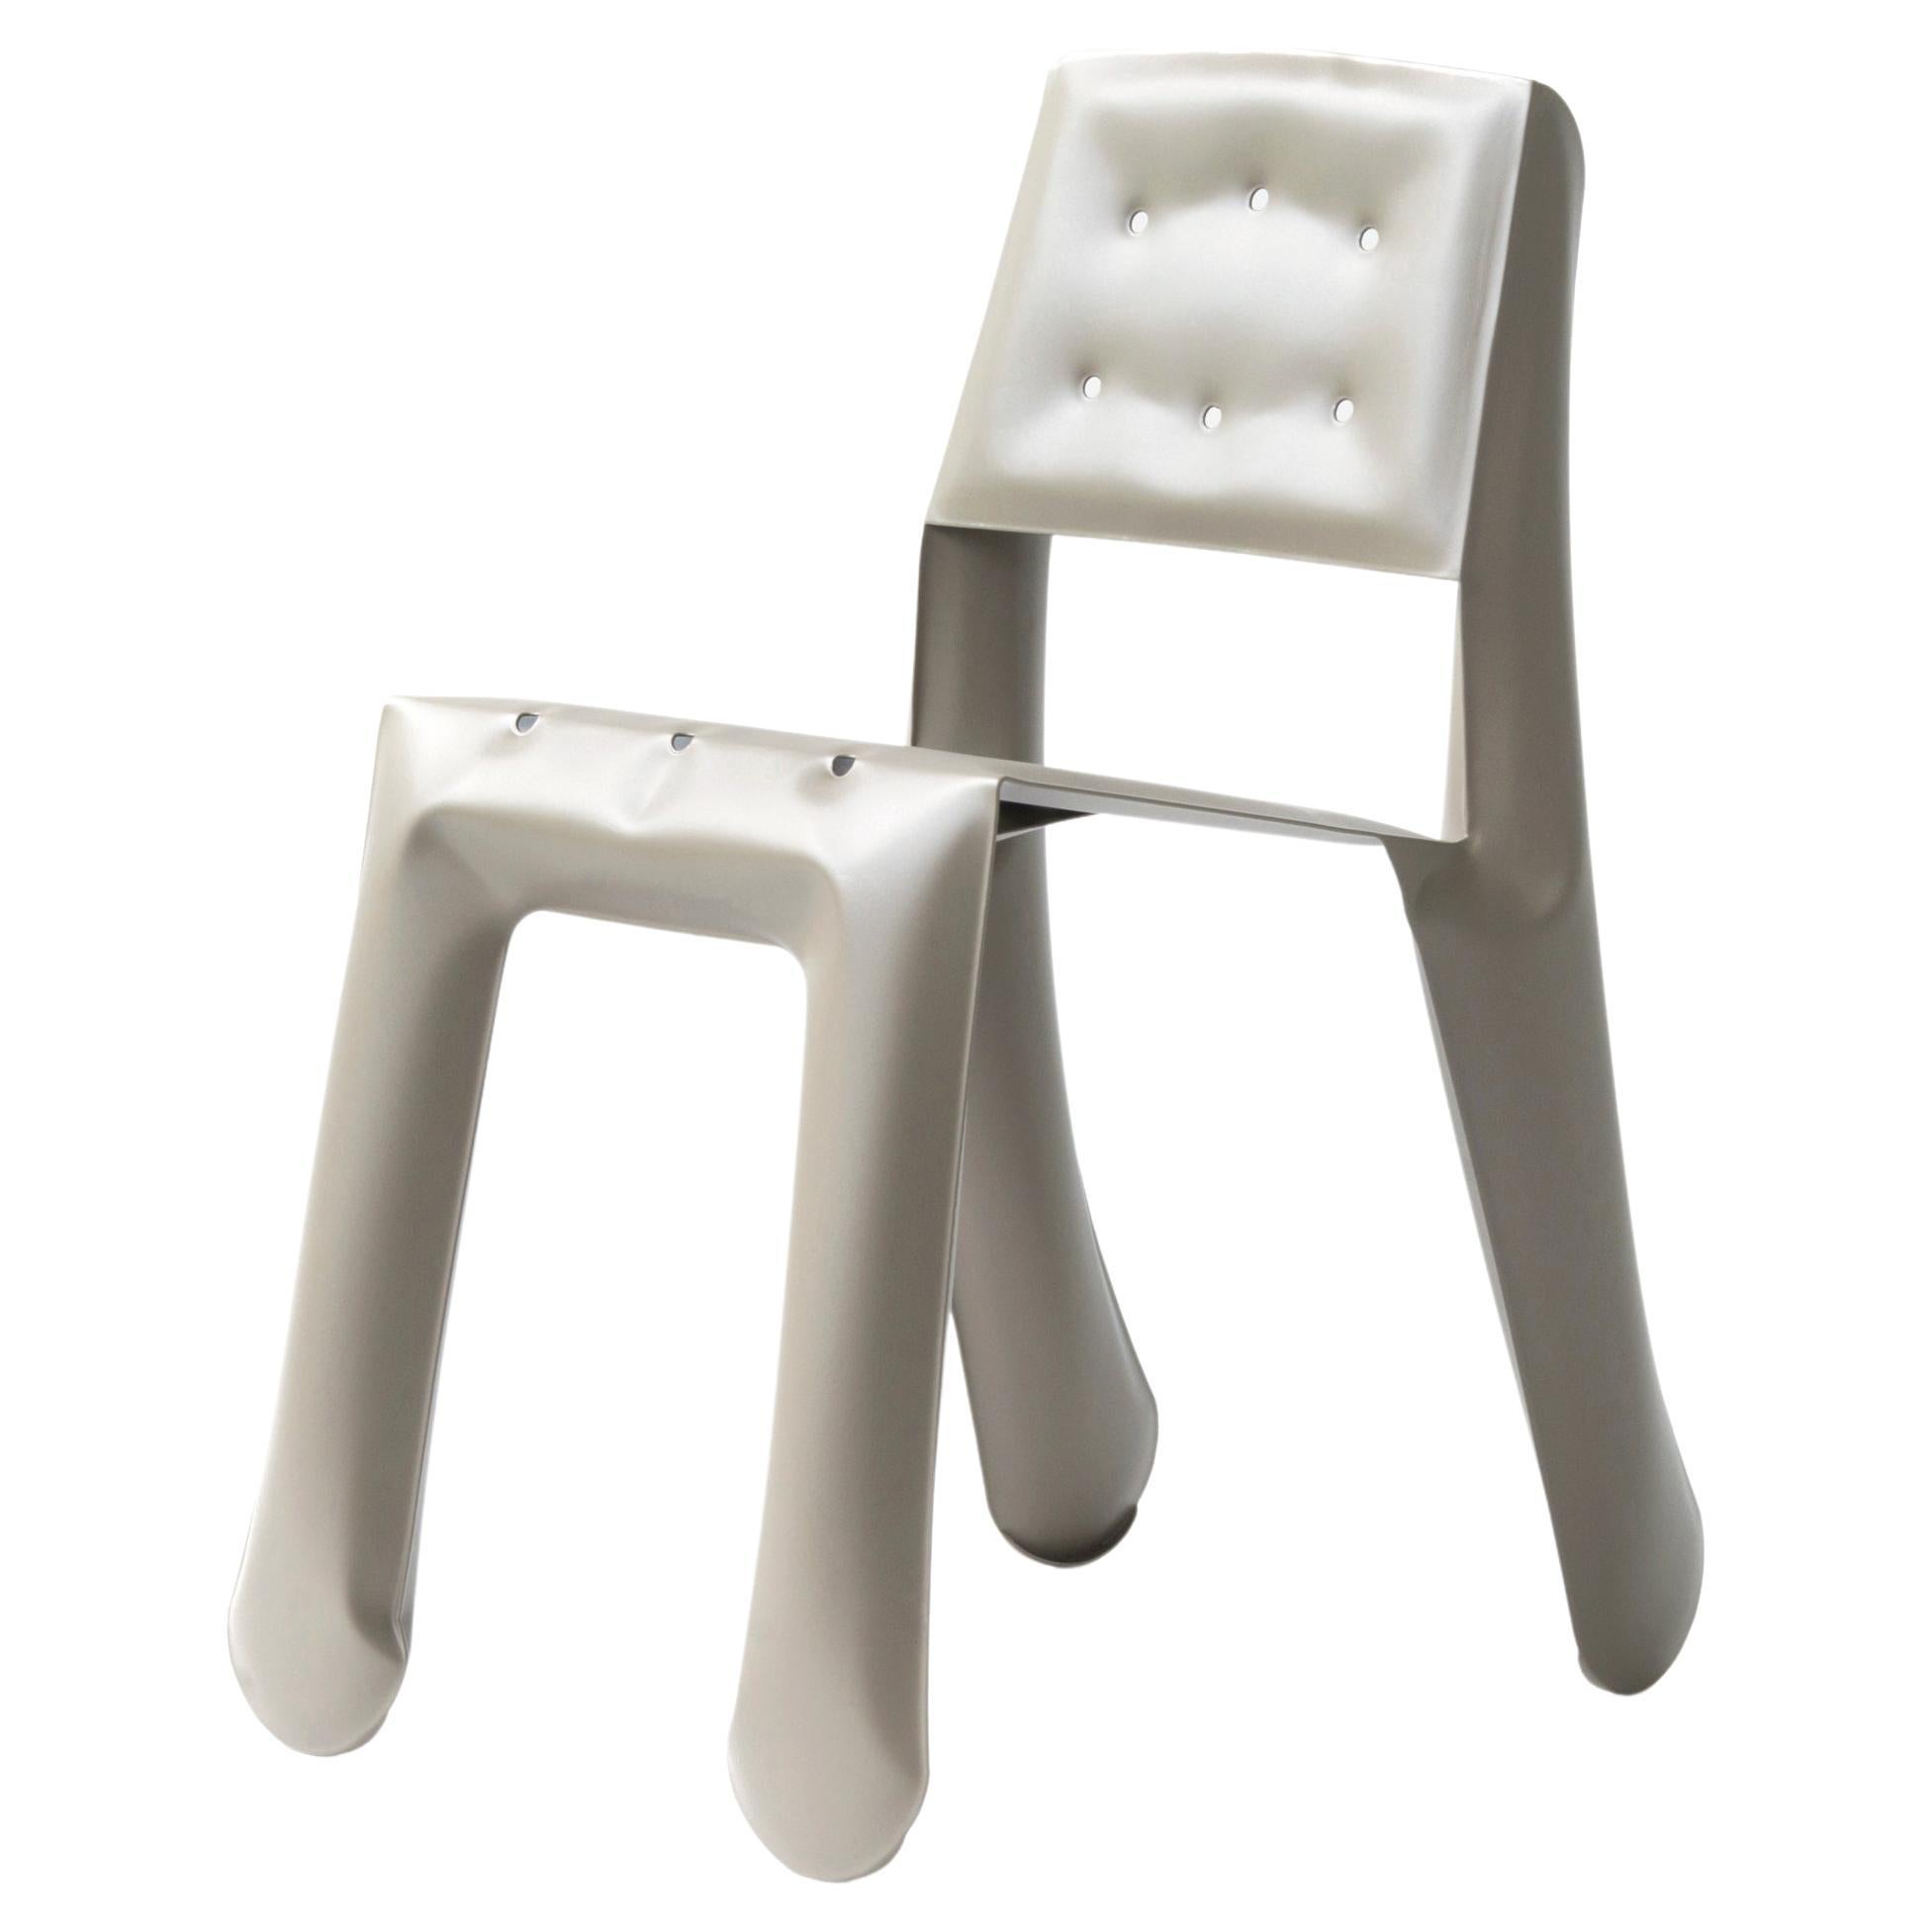 Beige Carbon Steel Chippensteel 0.5 Sculptural Chair by Zieta